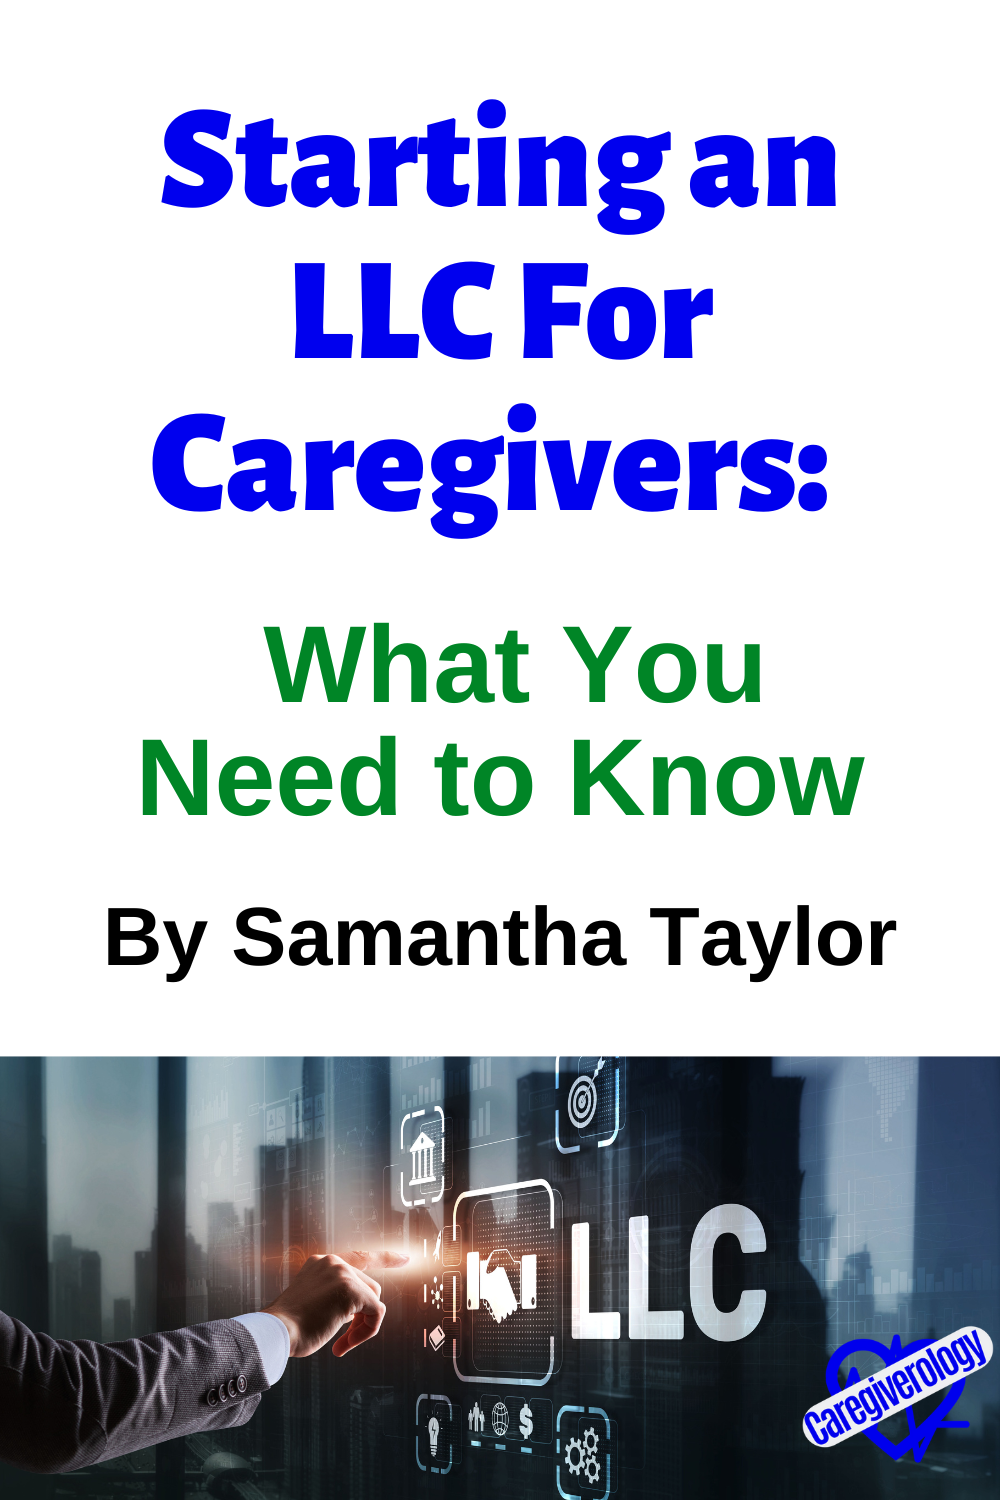 caregiver-llc.png